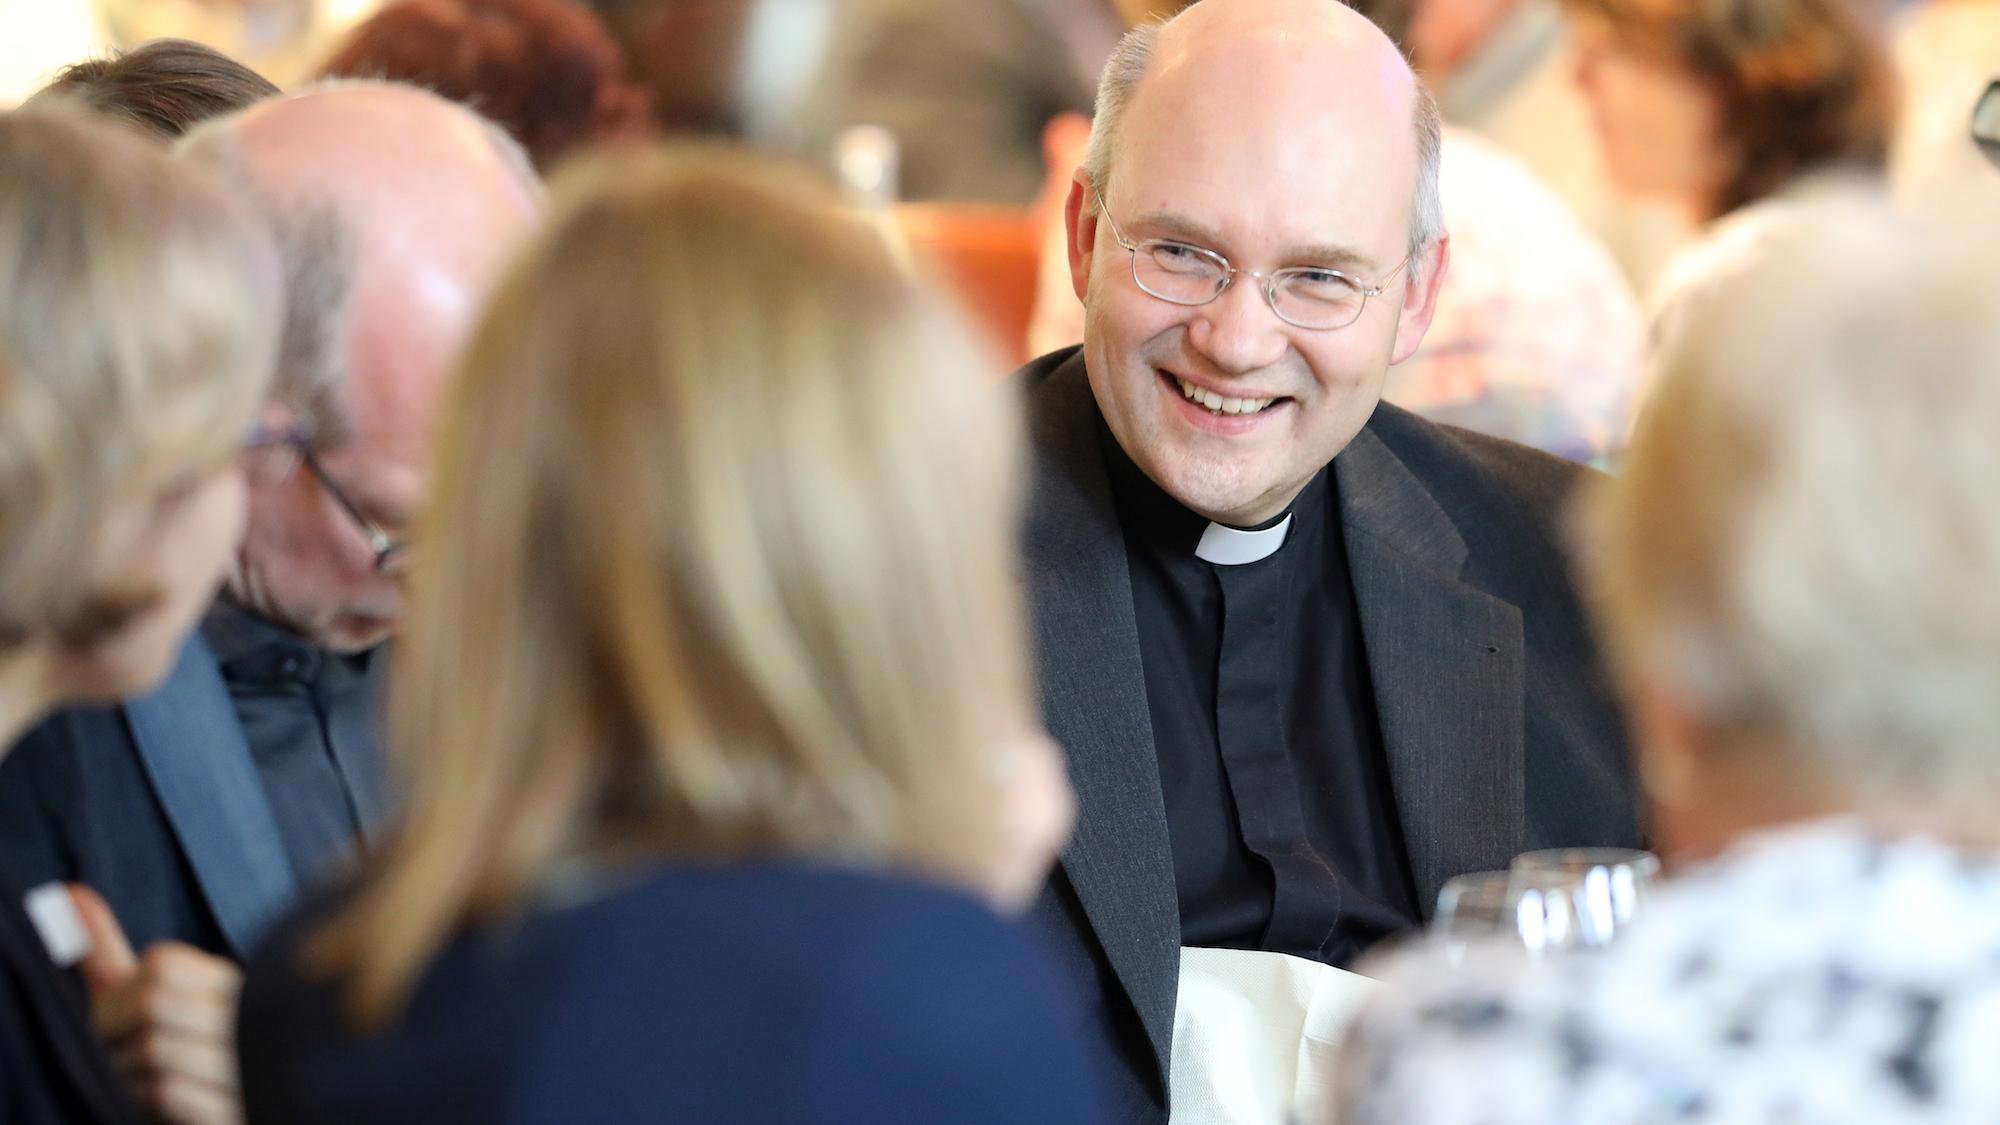 Bischof Helmut Dieser hat nach eigenem Bekenntnis im Dialog mit den Menschen viel gelernt und seine Sichtweise geändert. (c) Bistum Aachen/Andreas Steindl